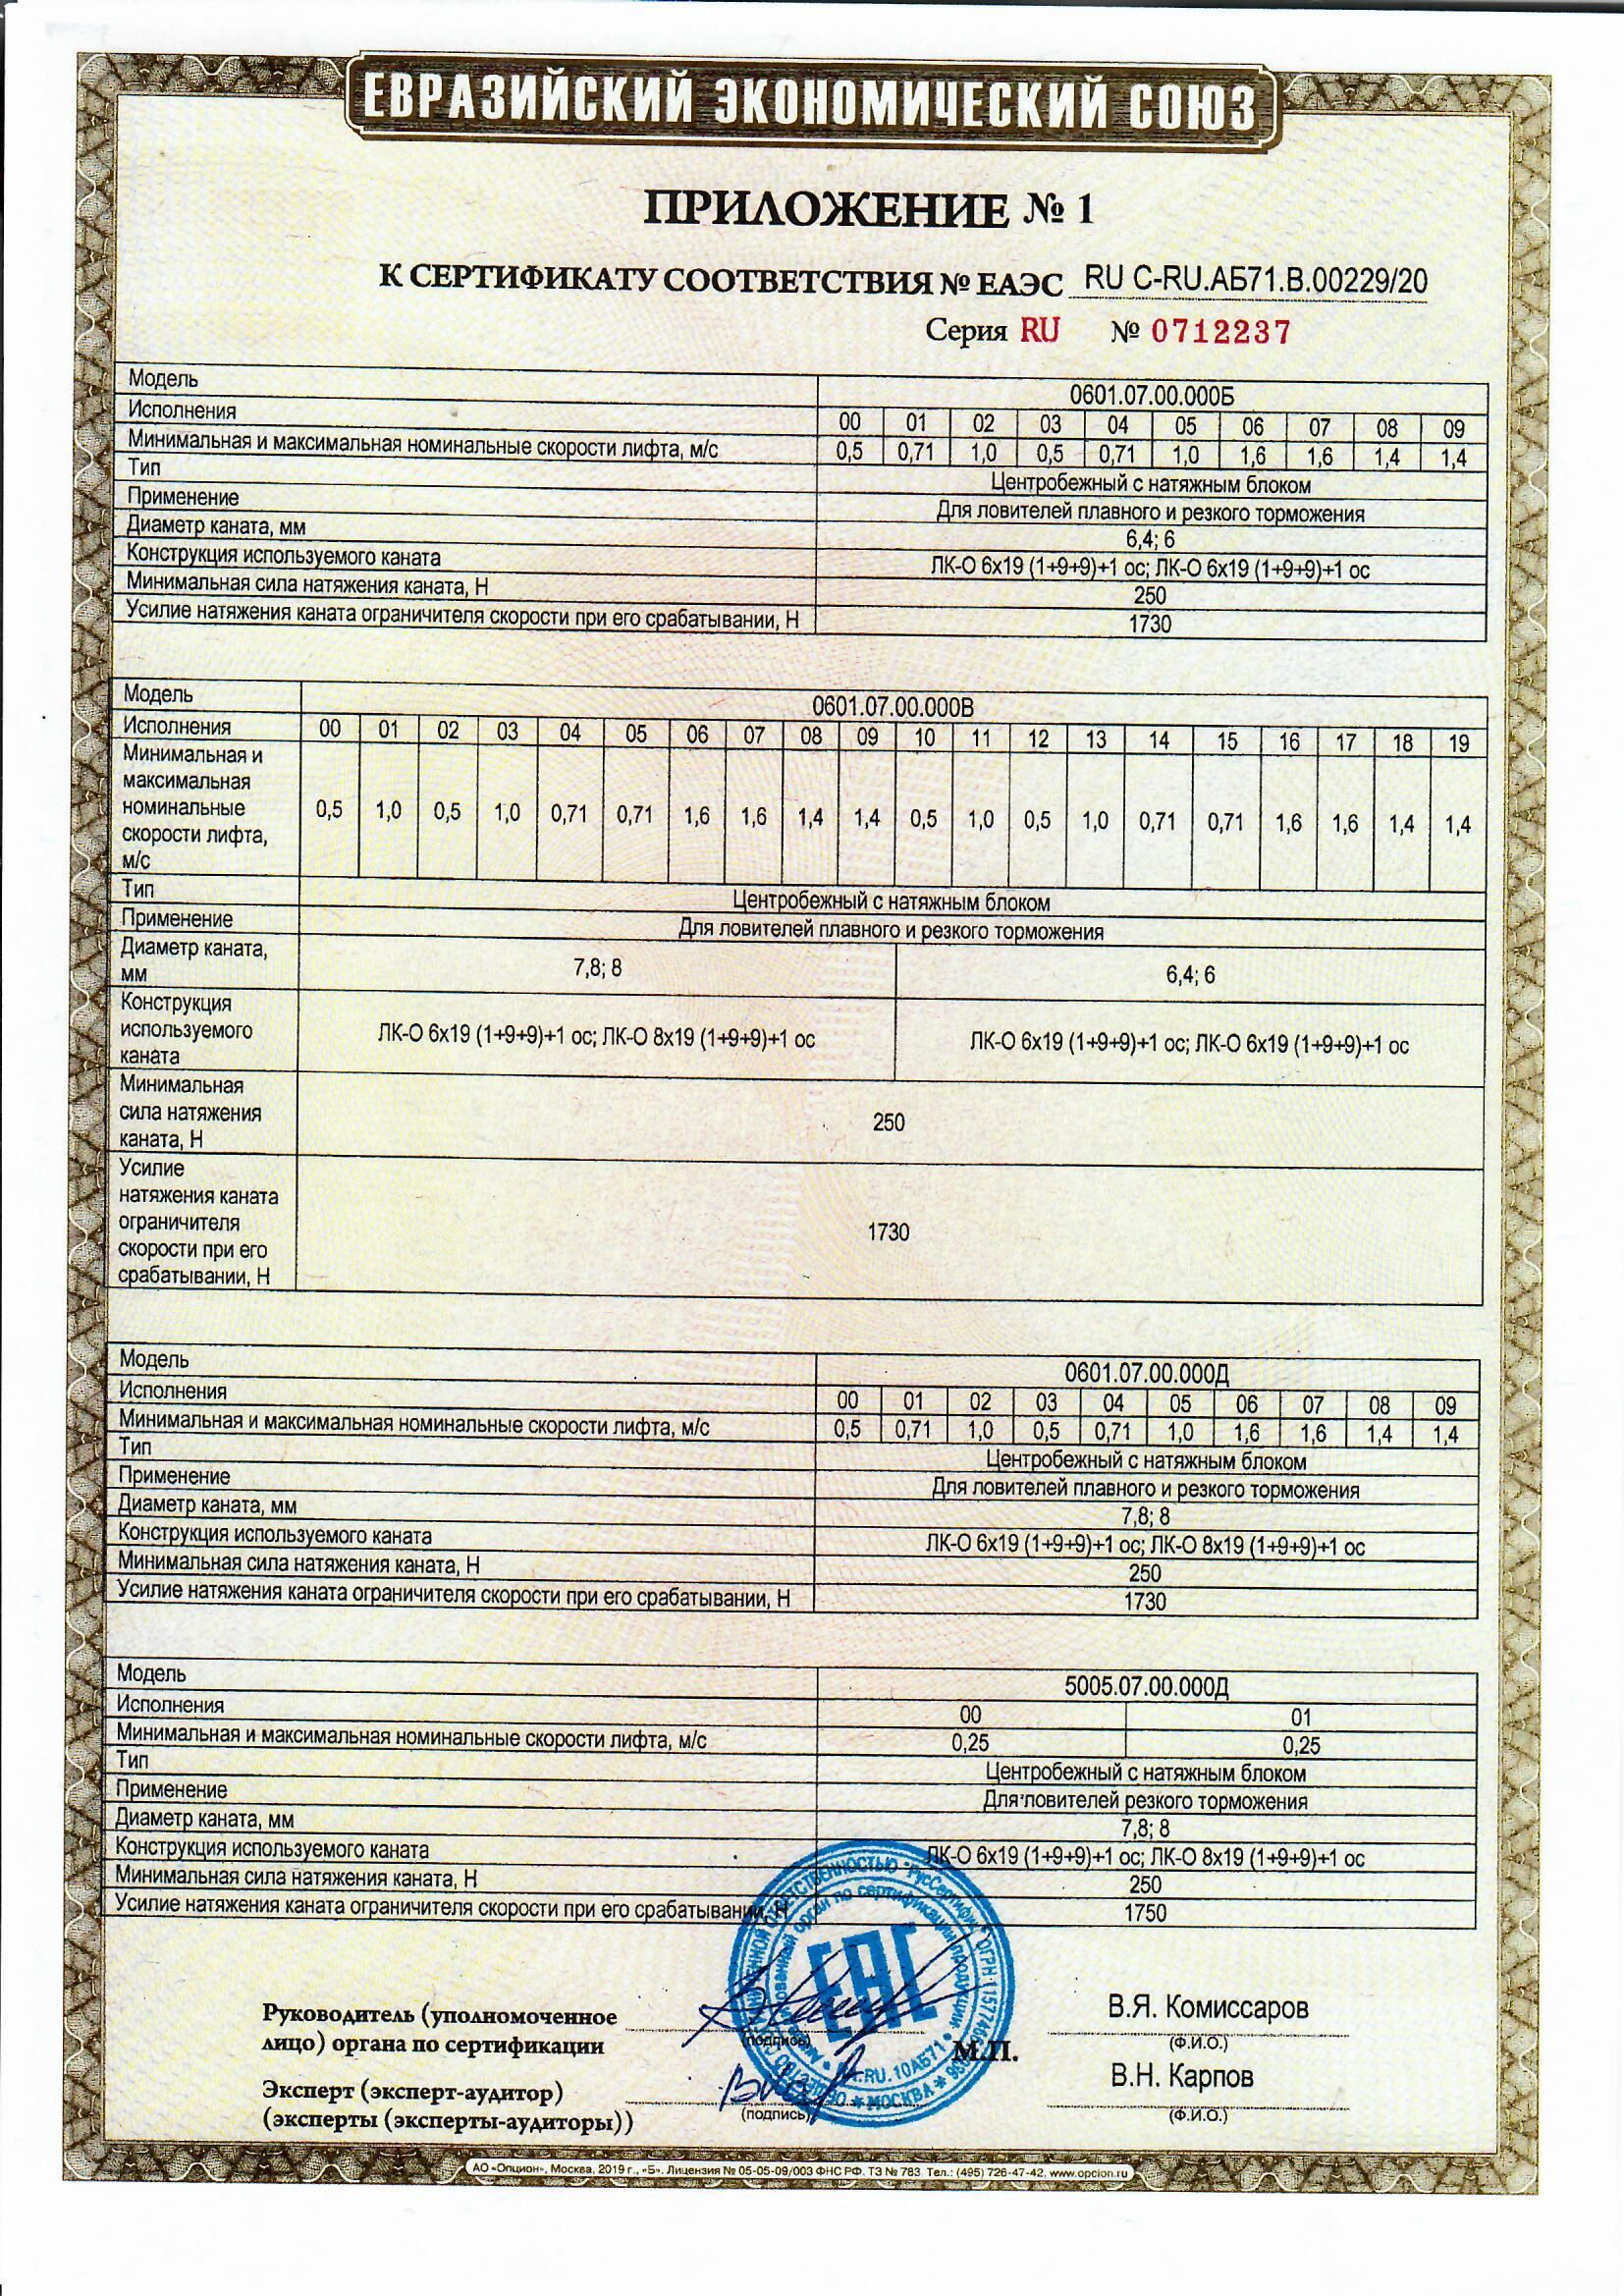 Приложение 1 к Сертификату RU C-RU.АБ71.В.00229/20